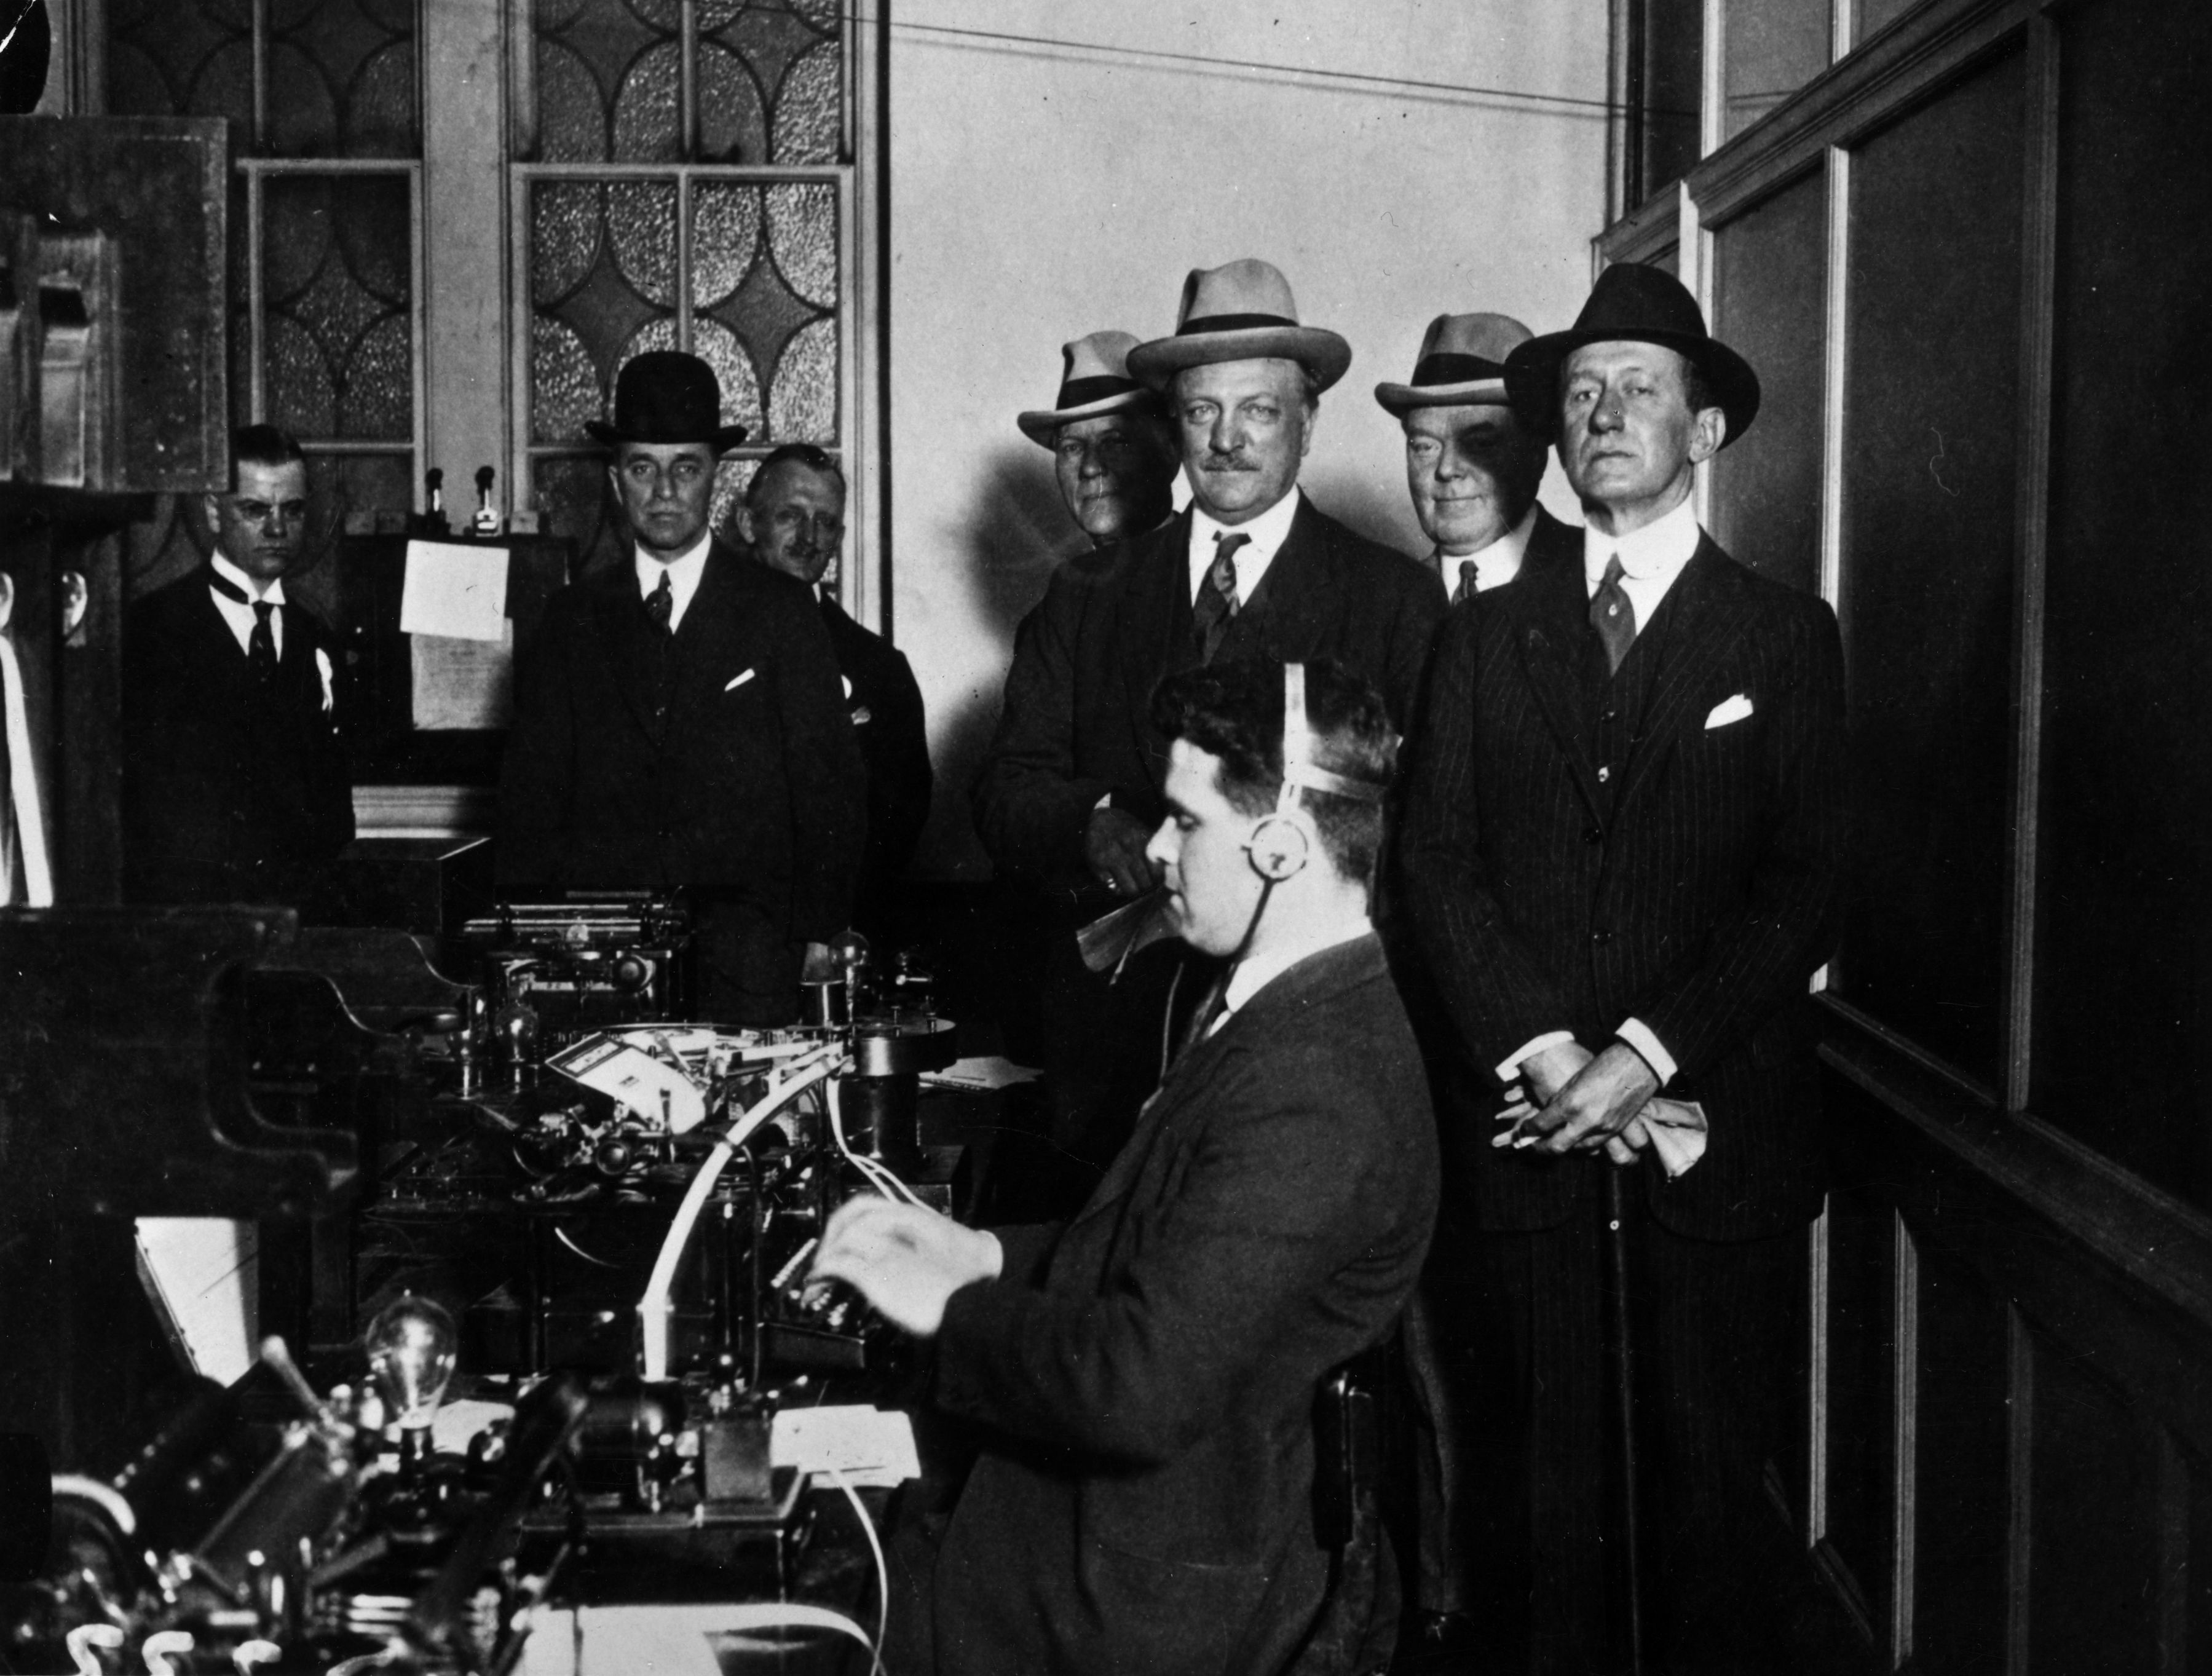 Giugno 1923: alcuni politici assistono a una dimostrazione in una stazione wireless locale. A destra Guglielmo Marconi